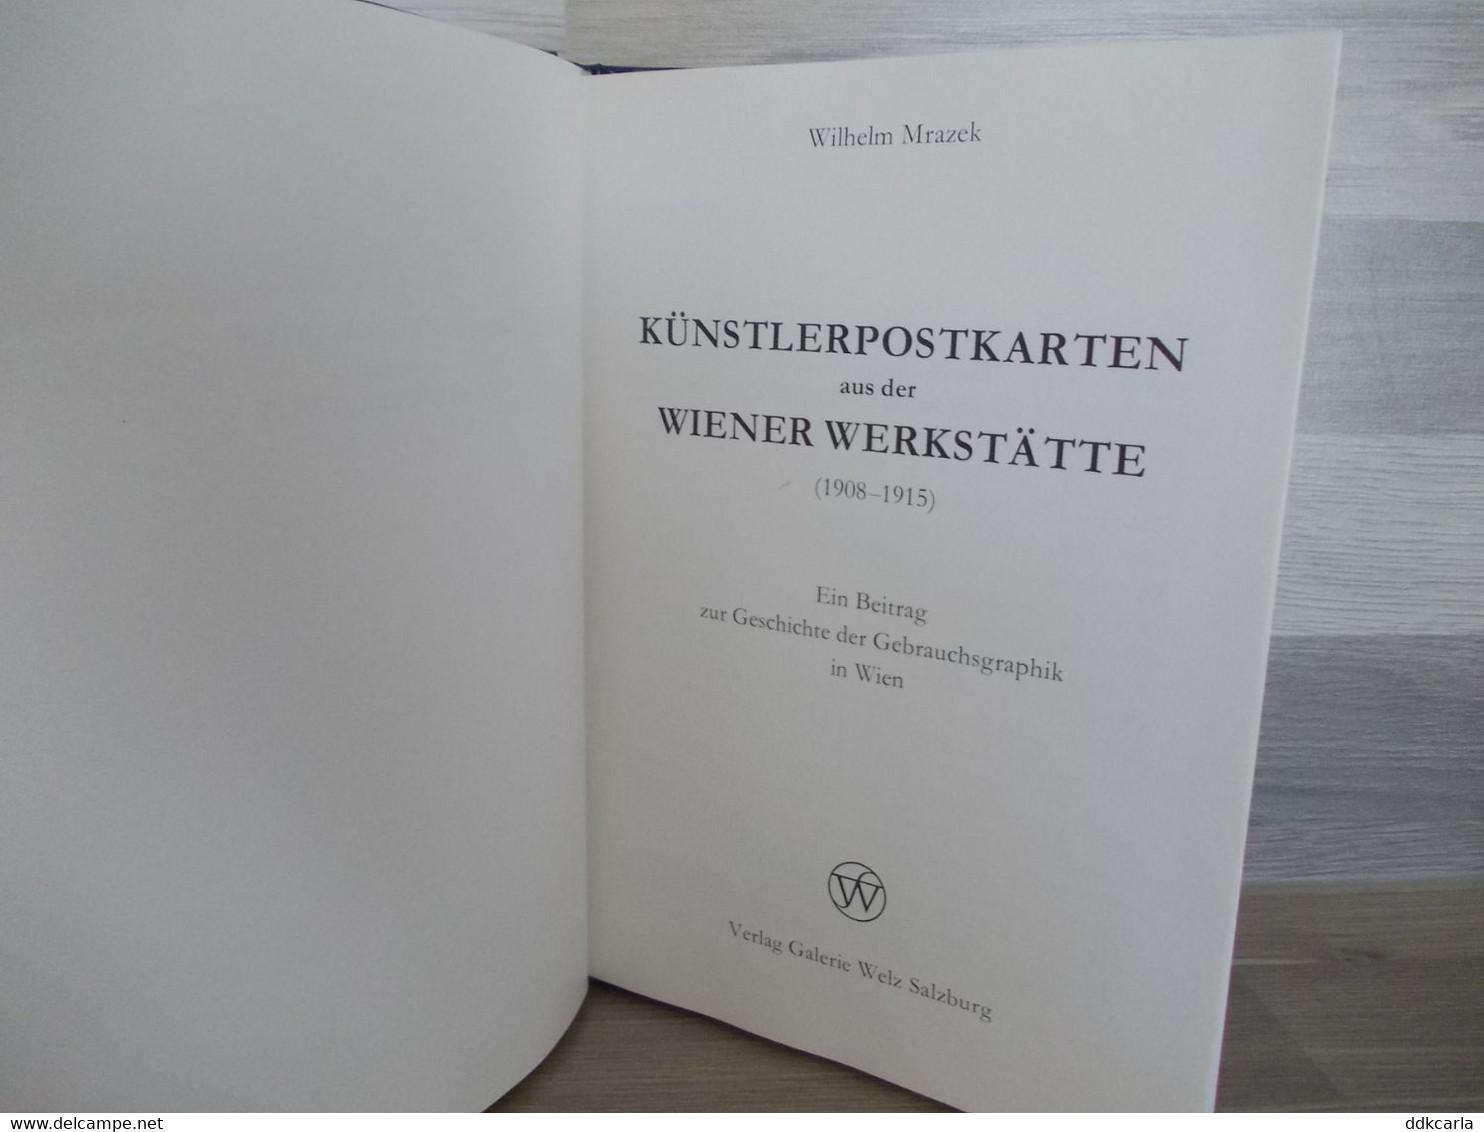 Künstlerpostkarten Aus Der Wiener Werkstätte (1908-1915) - Wilhelm Mrazek - 1Galerie Welz Salzburg - Art